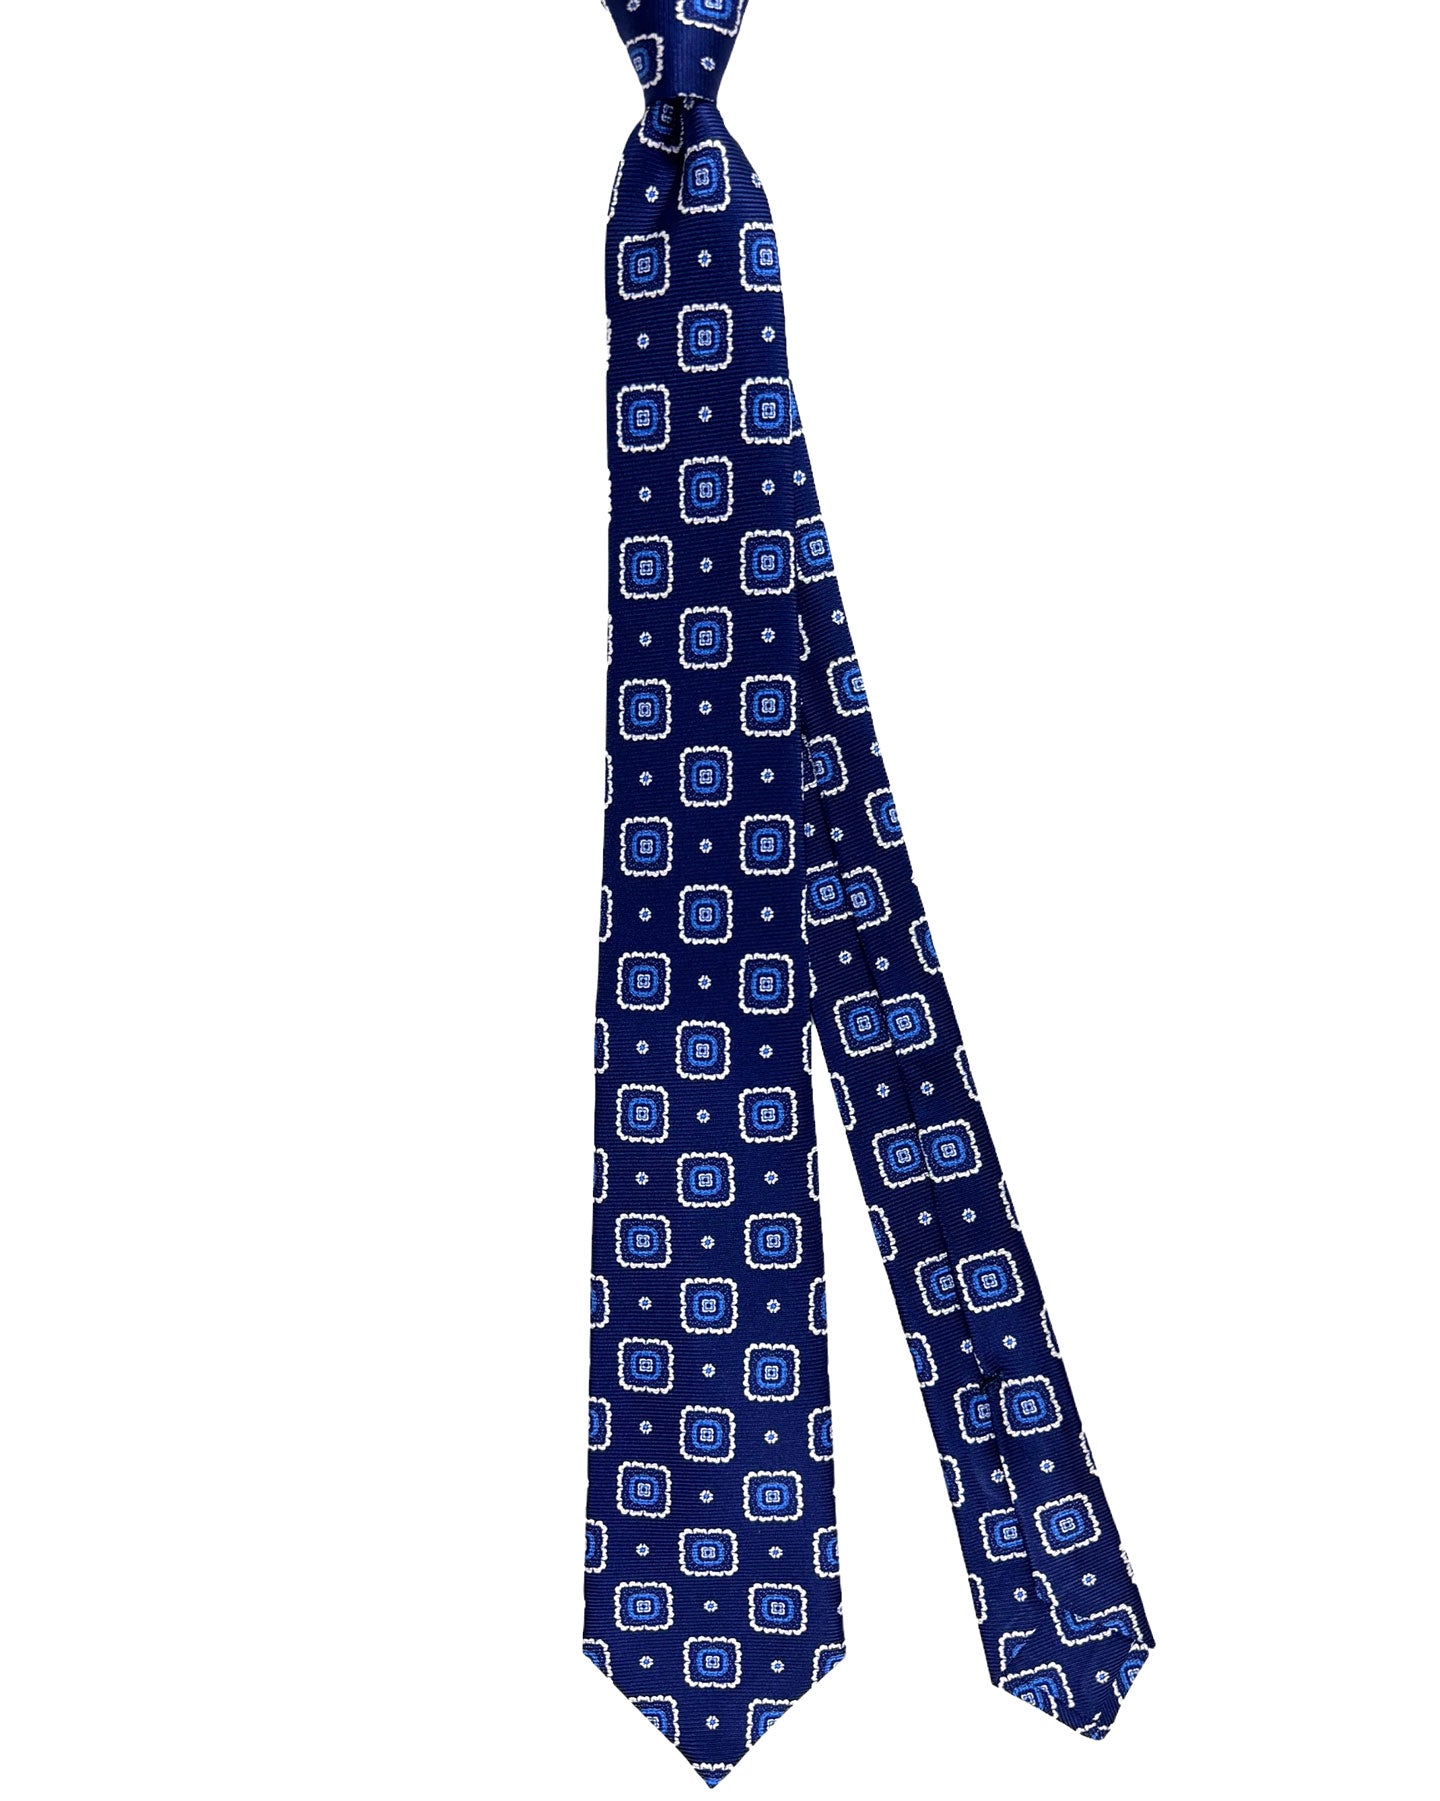 Kiton Tie Navy Blue Flowers - Sevenfold Necktie